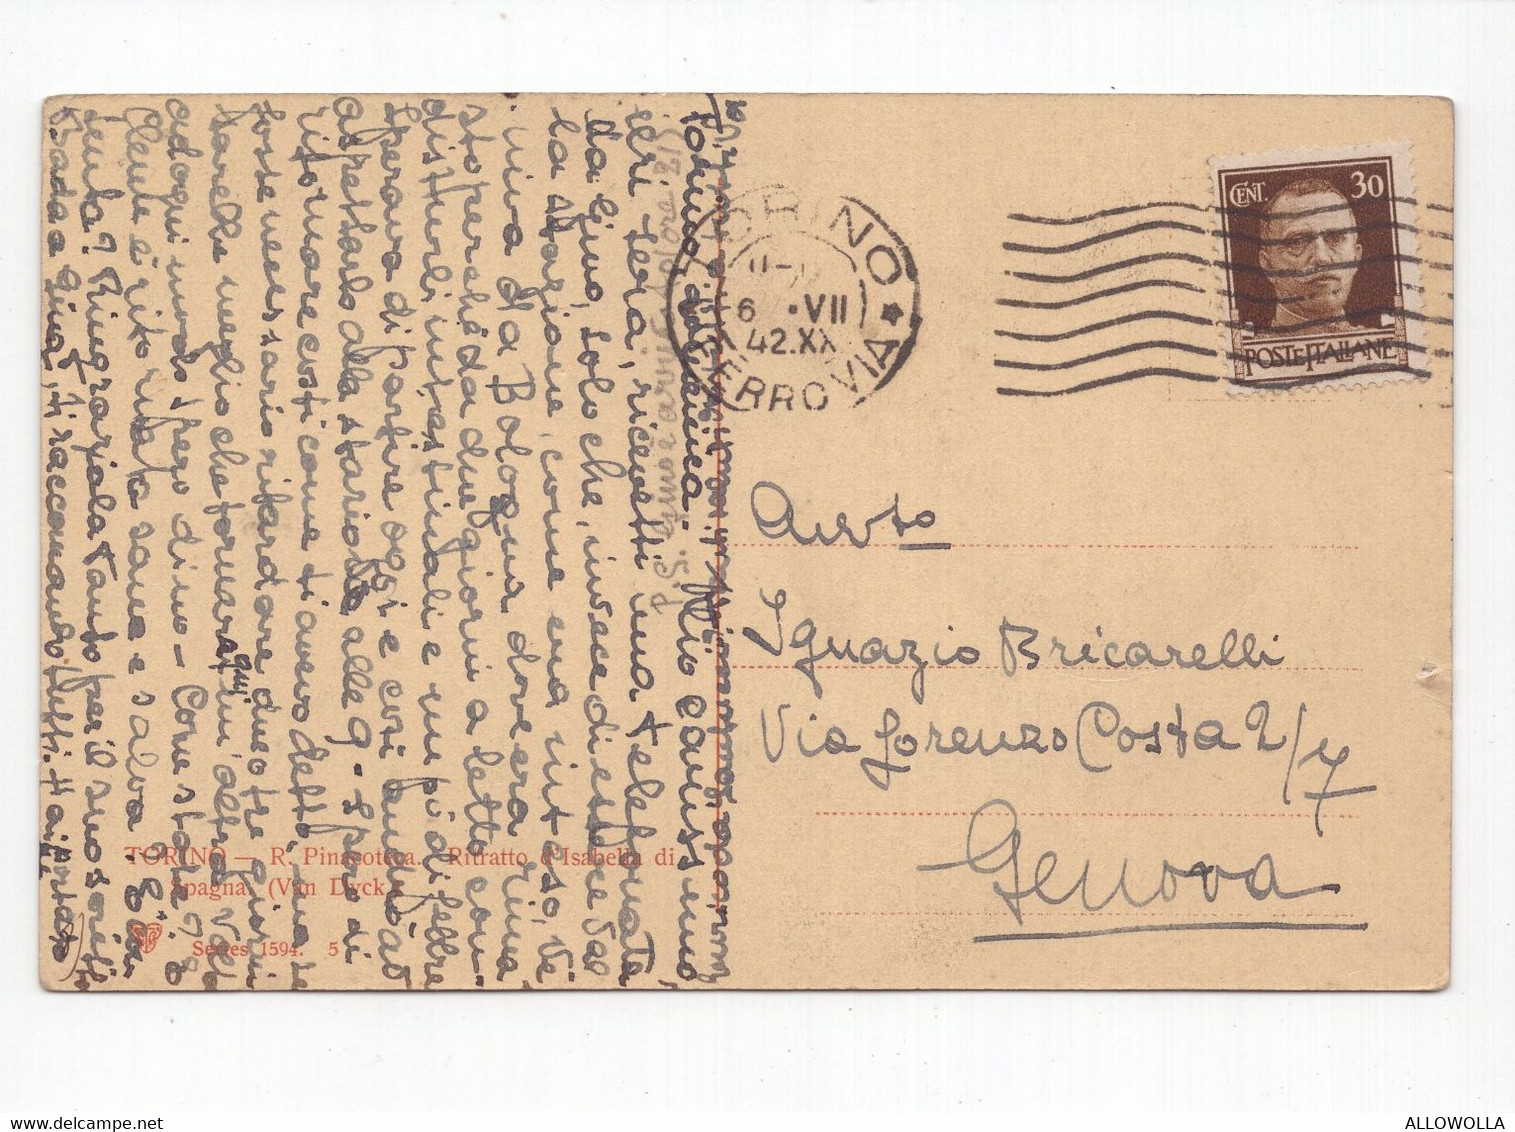 19083 " TORINO-R. PINACOTECA-RITRATTO D'ISABELLA DI SPAGNA(VAN DYCK) "-CART. POST. SPED.1942 - Museos